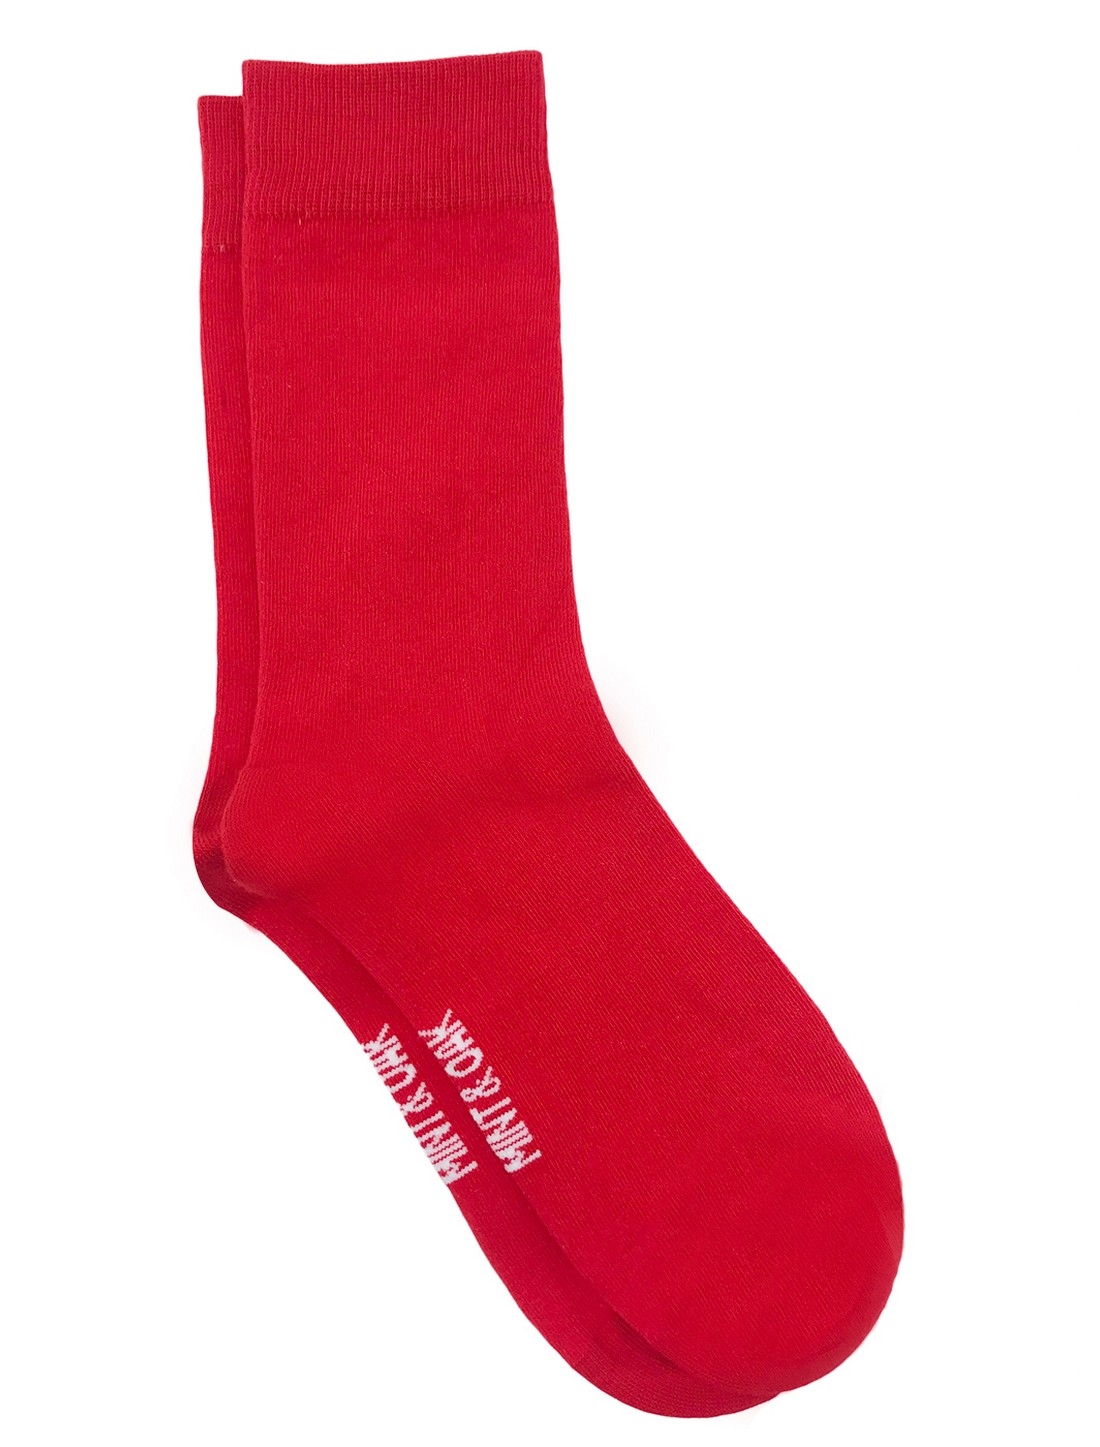 Mint & Oak | Mint & Oak Tomato Red Calf Length Socks for Men